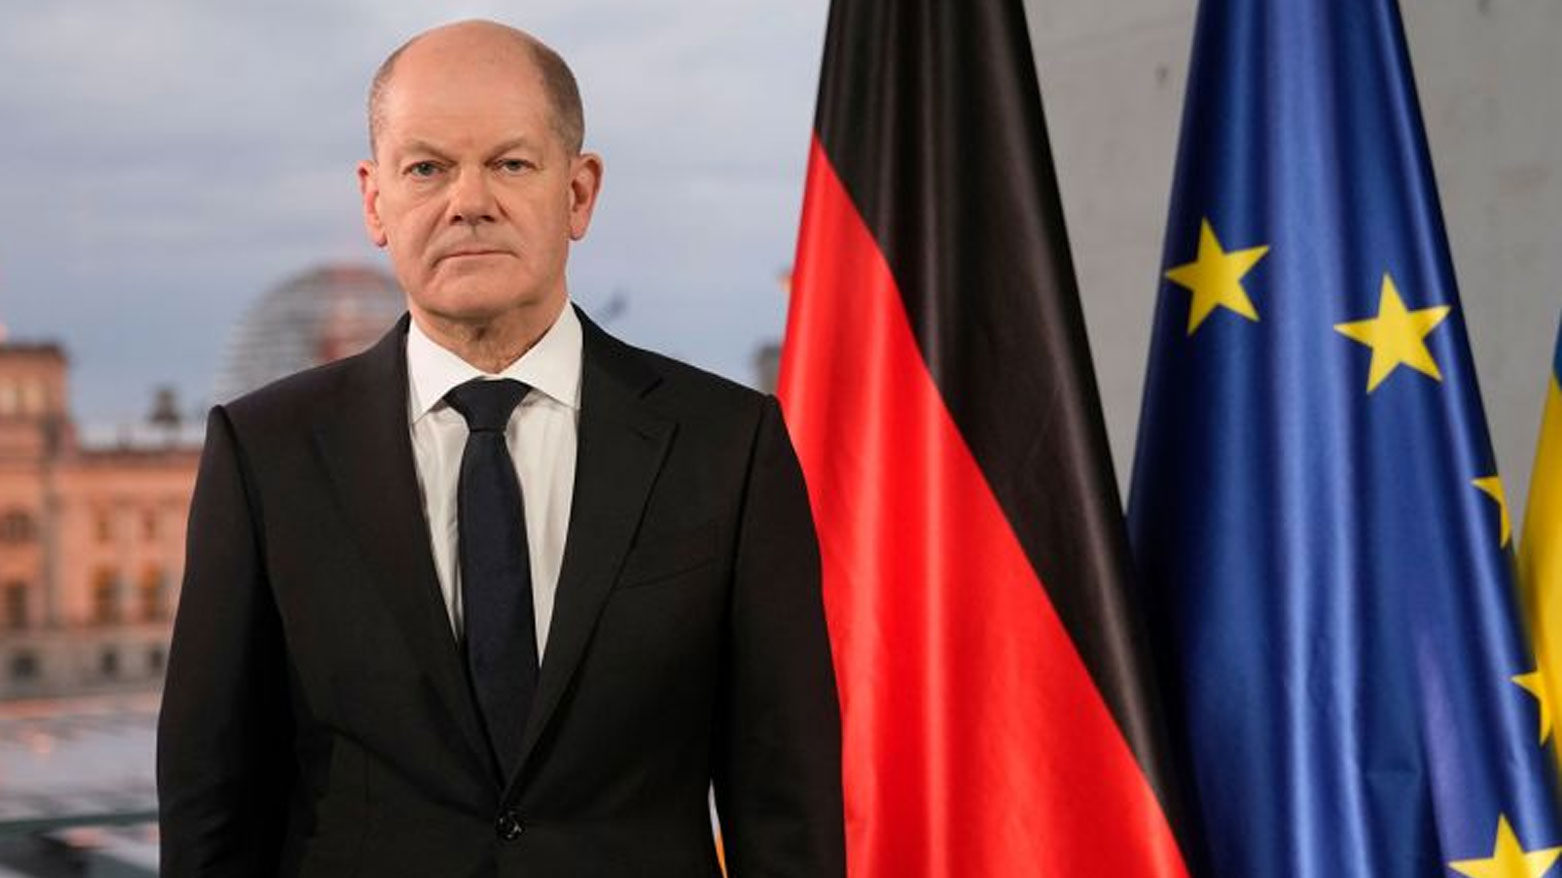 مستشار ألمانيا يستبعد توجّه جنود من أوروبا والناتو إلى أوكرانيا